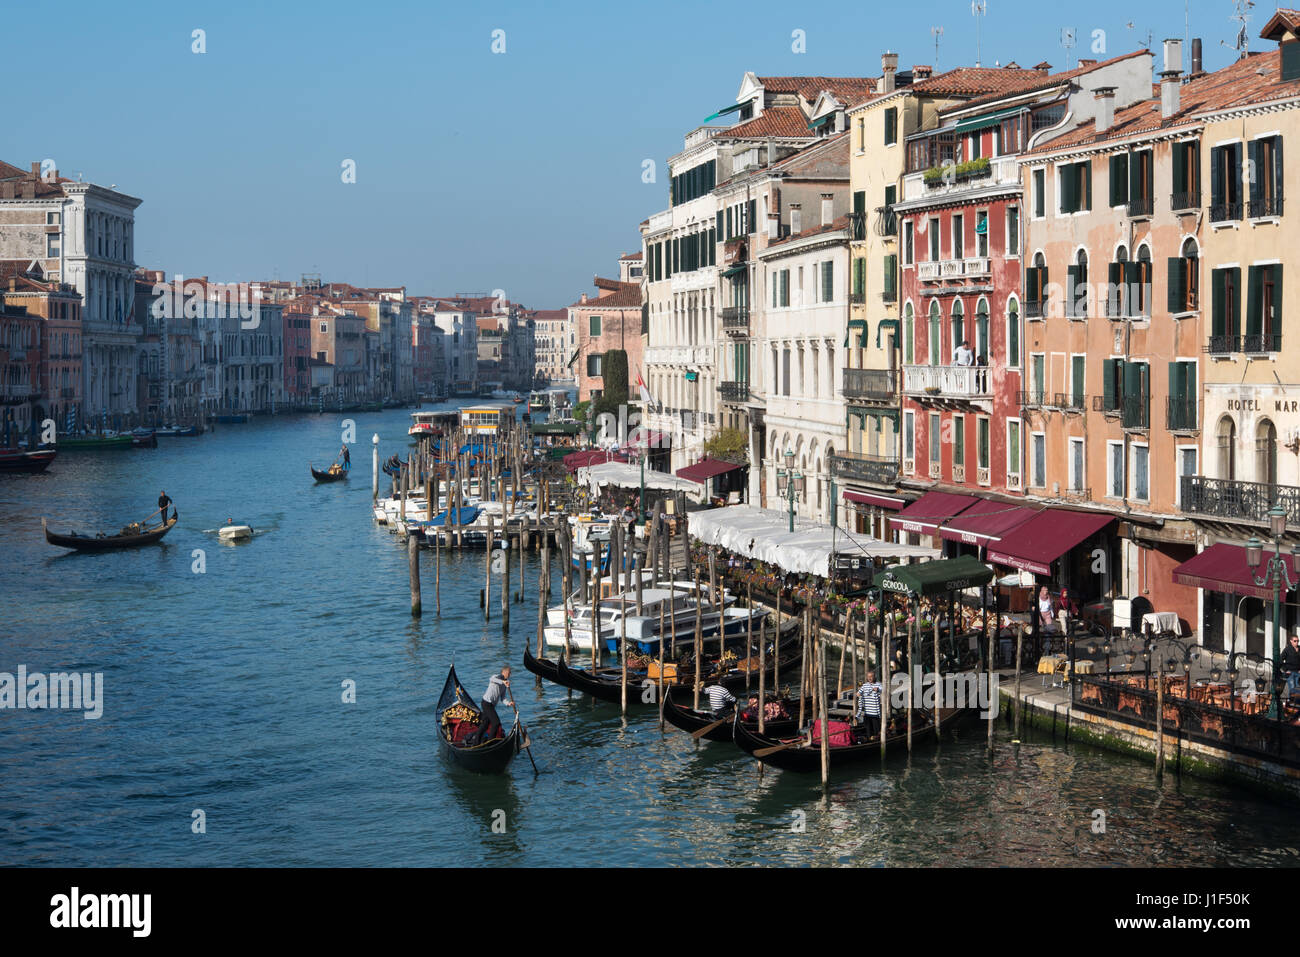 Venice Grand Canal with Riva del Vin on right, view from Rialto Bridge Stock Photo